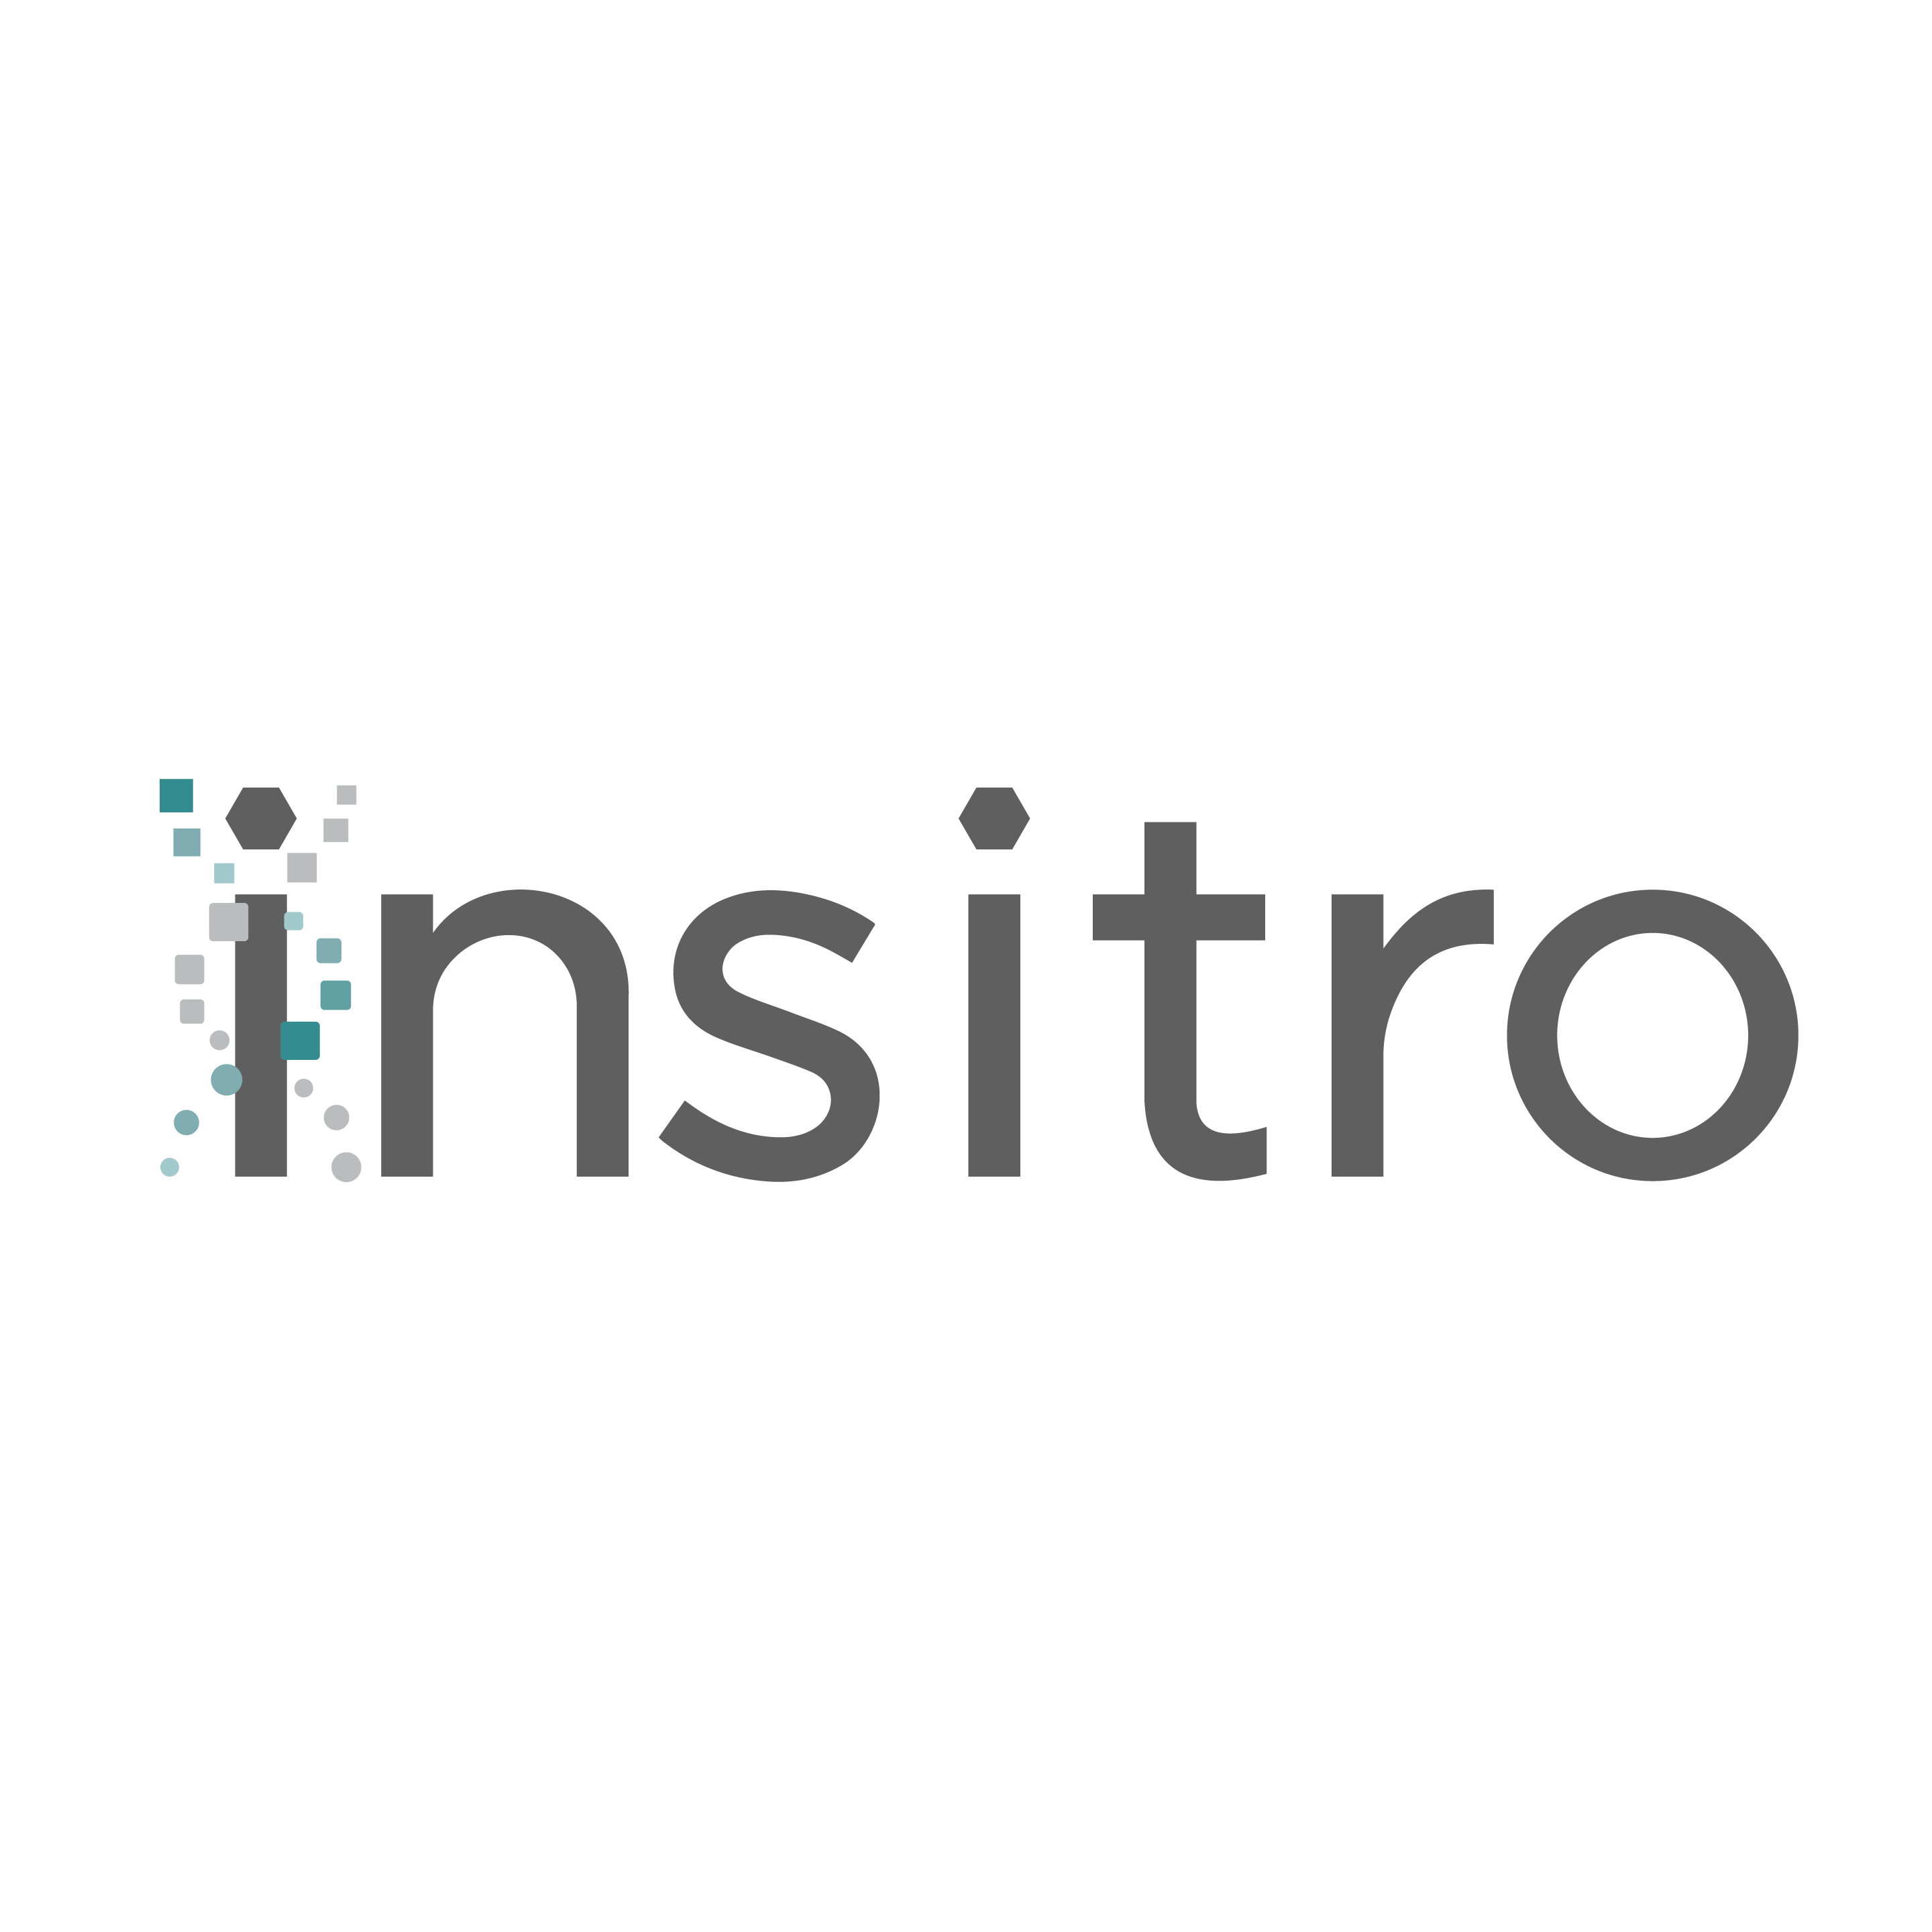 Insitro Logo